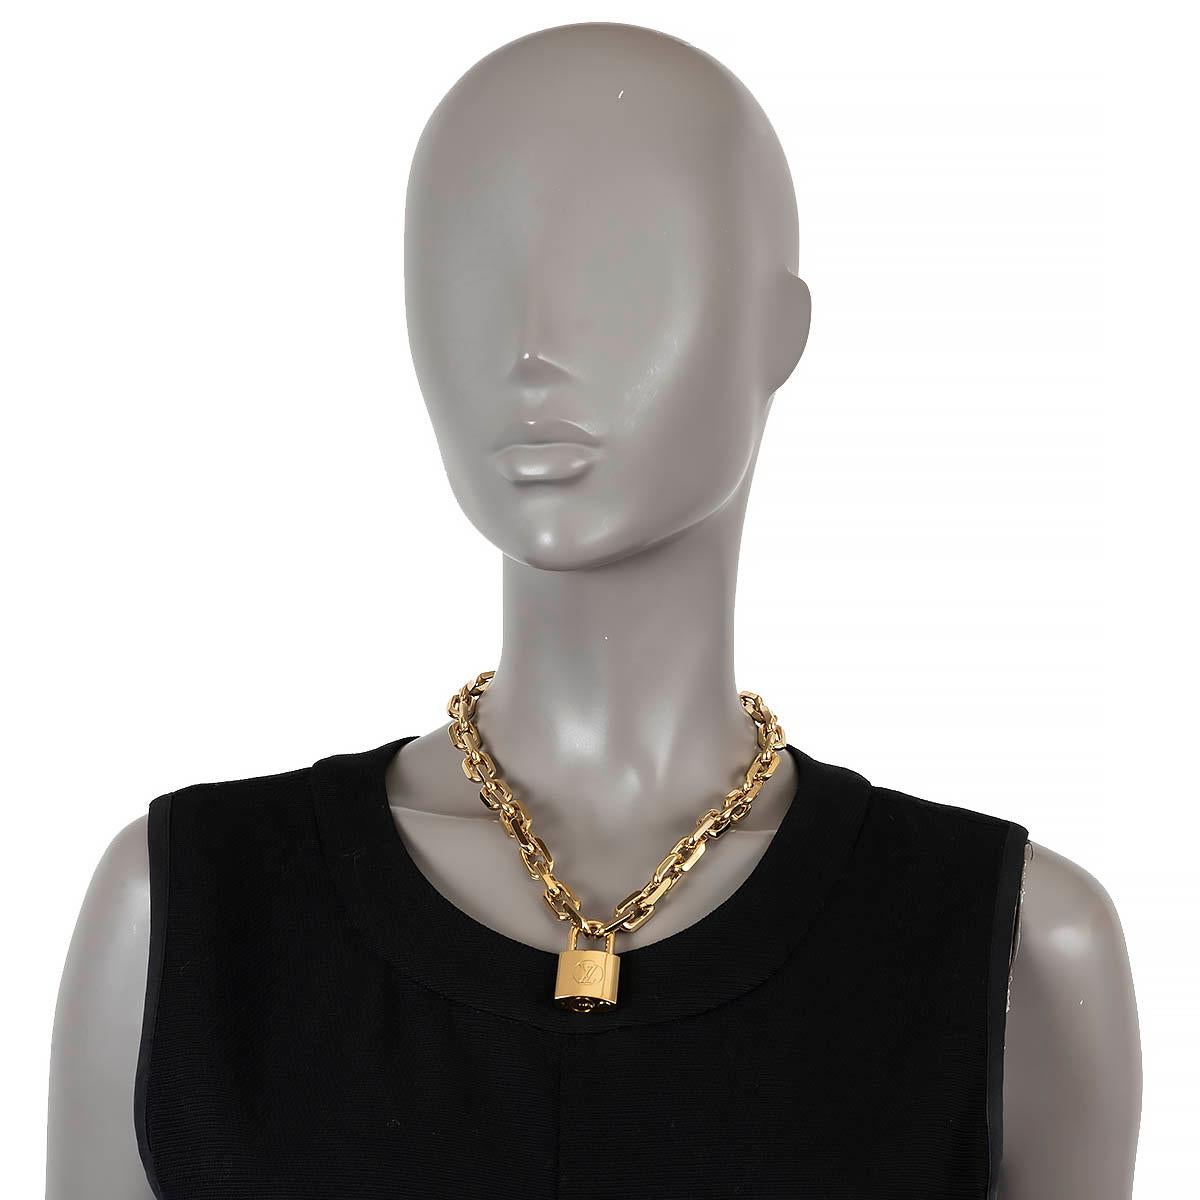 100% authentische Louis Vuitton Edge Cadenas Halskette aus goldfarbenem Metall mit einem großen, sorgfältig mit den LV-Initialen gravierten Vorhängeschloss-Anhänger, der an einer dicken Gliederkette hängt. Das Öffnen und Schließen des Anhängers